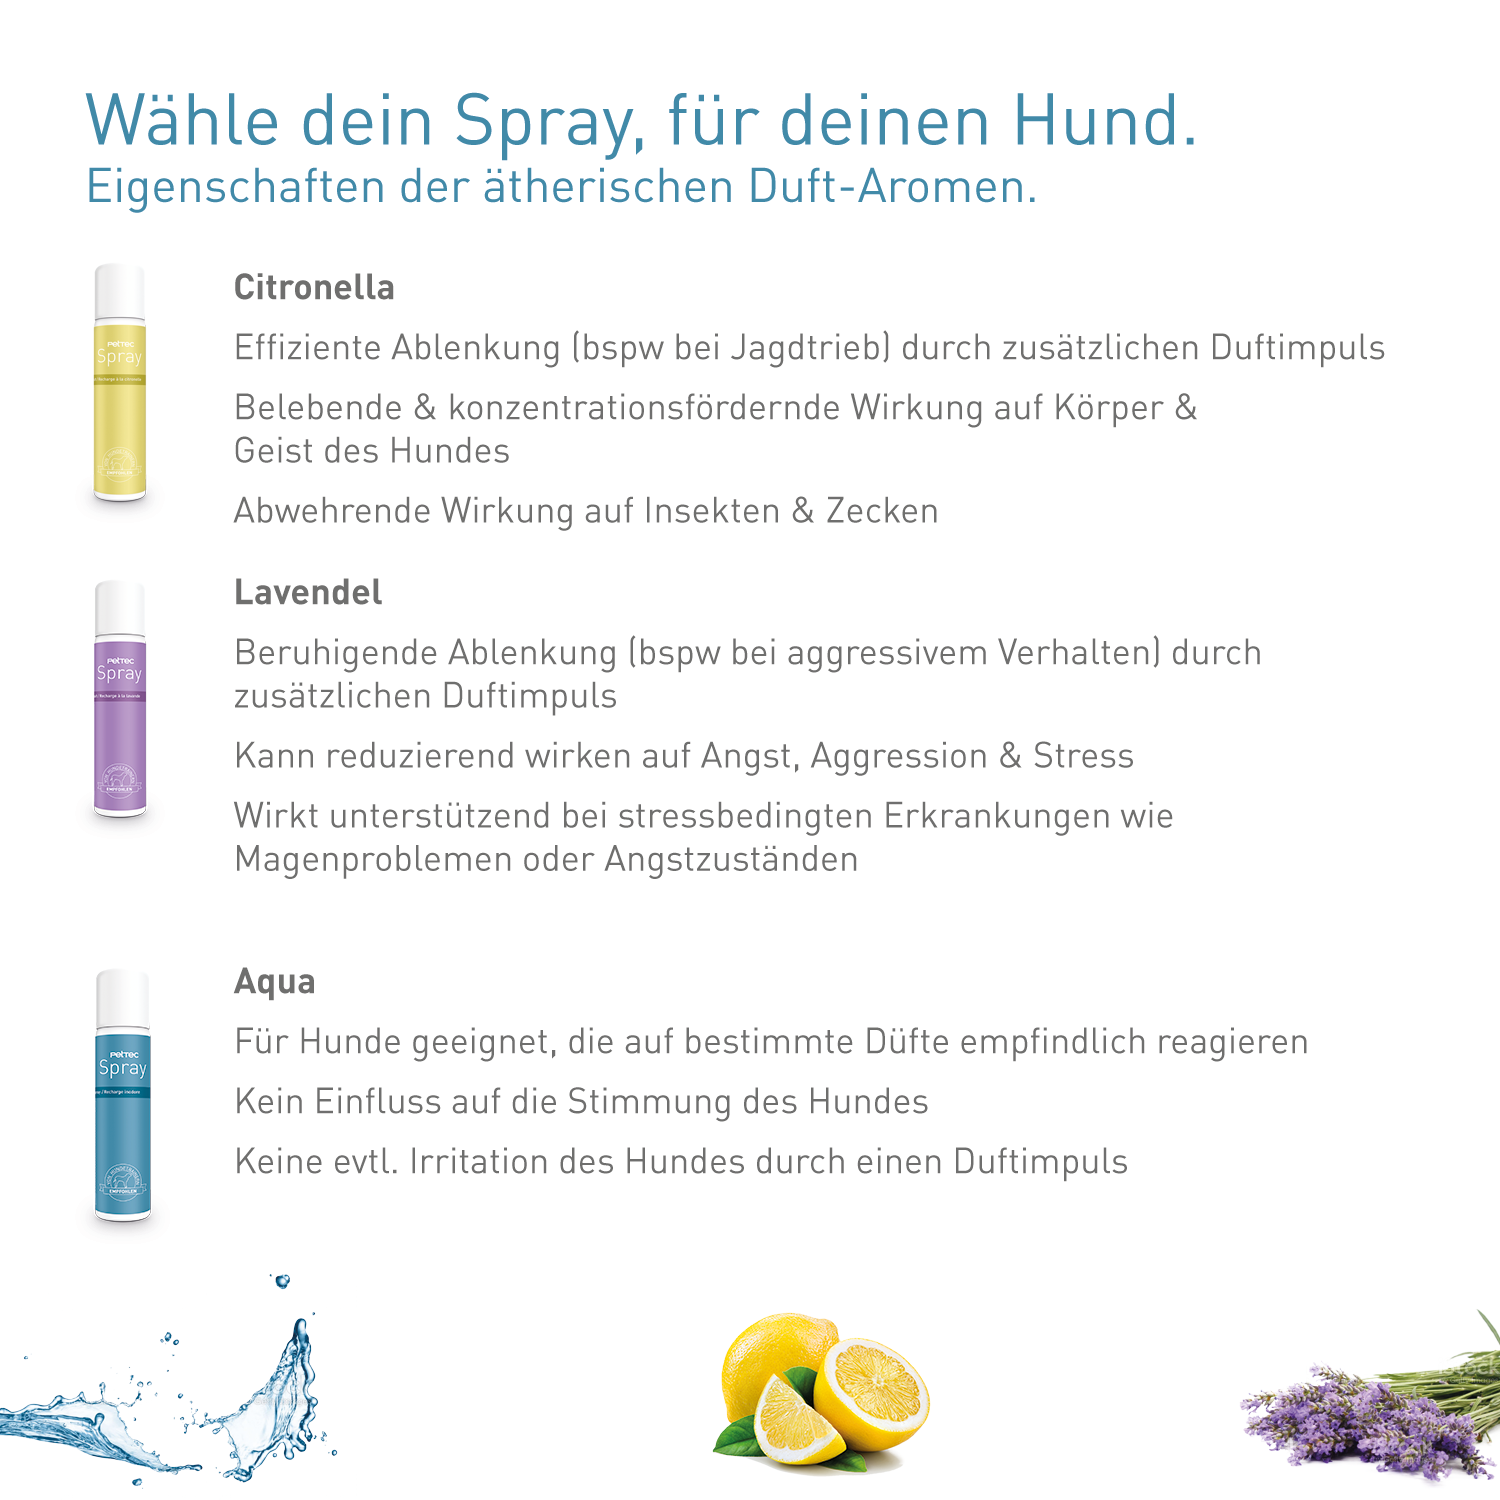 PetTec Nachfüllspray für Hundetrainer - 3er-Pack Citronella-Spray